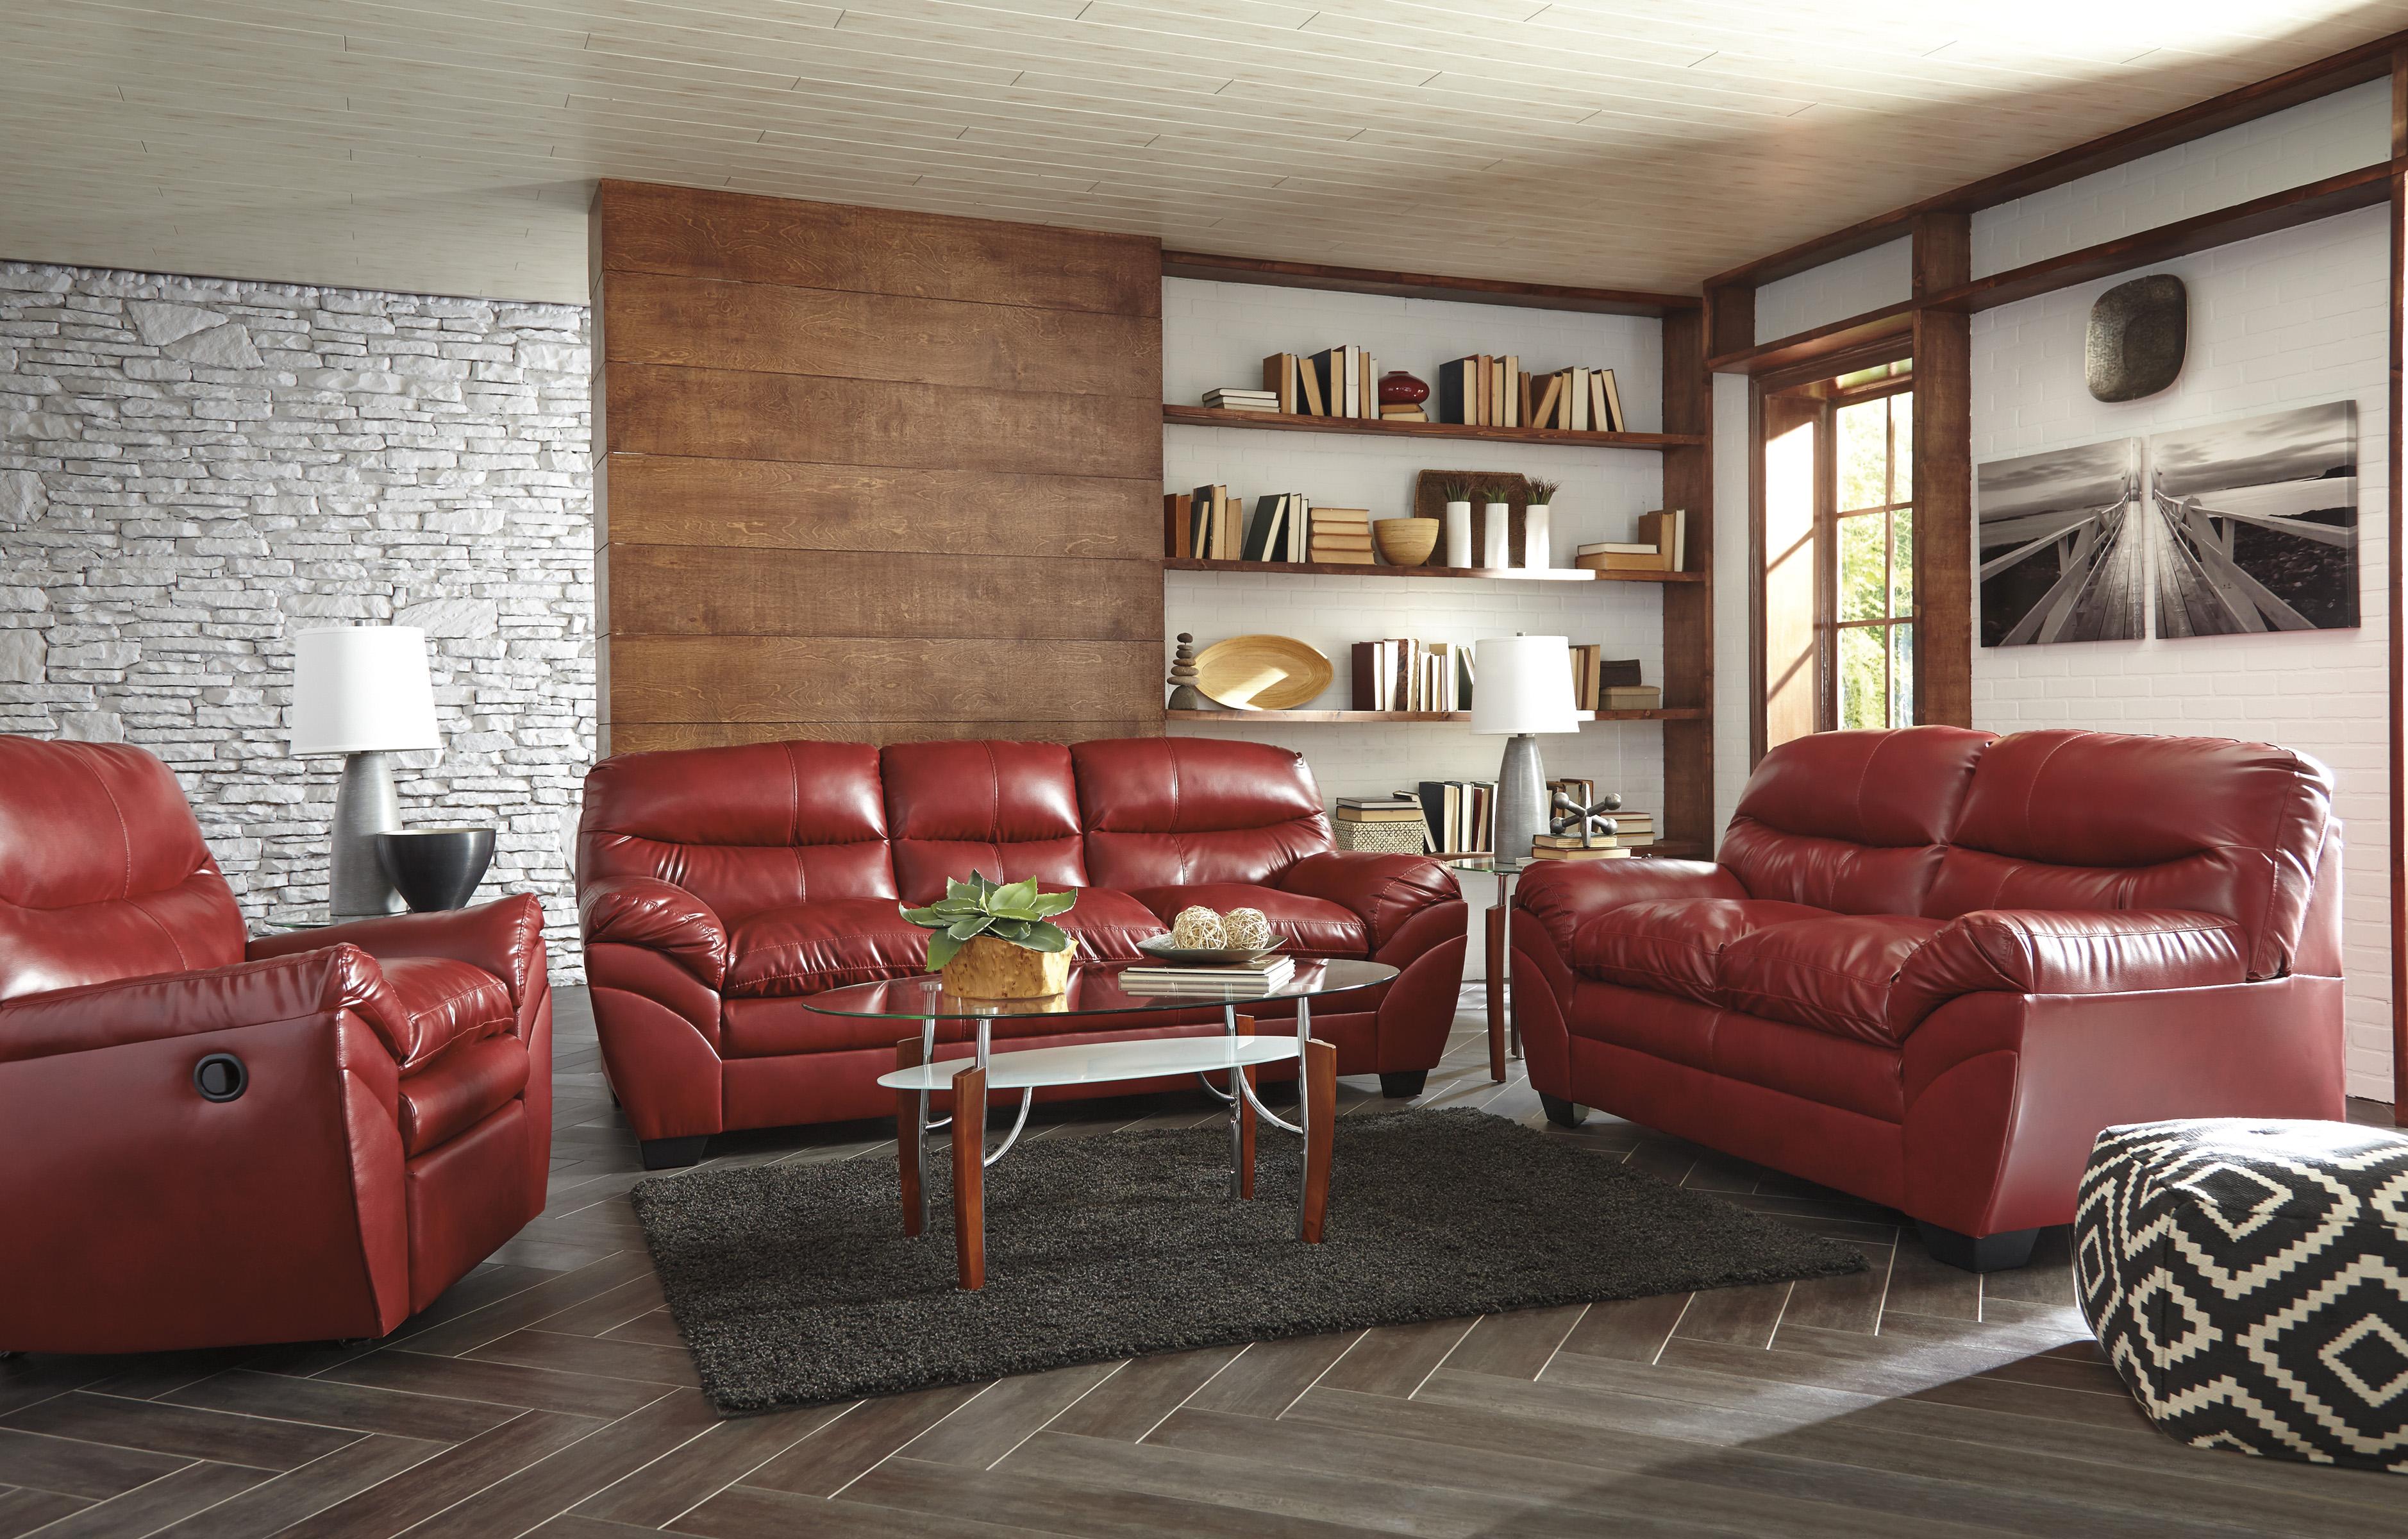 

    
Ashley Tassler DuraBlend 3Piece Living Room Set in Crimson
